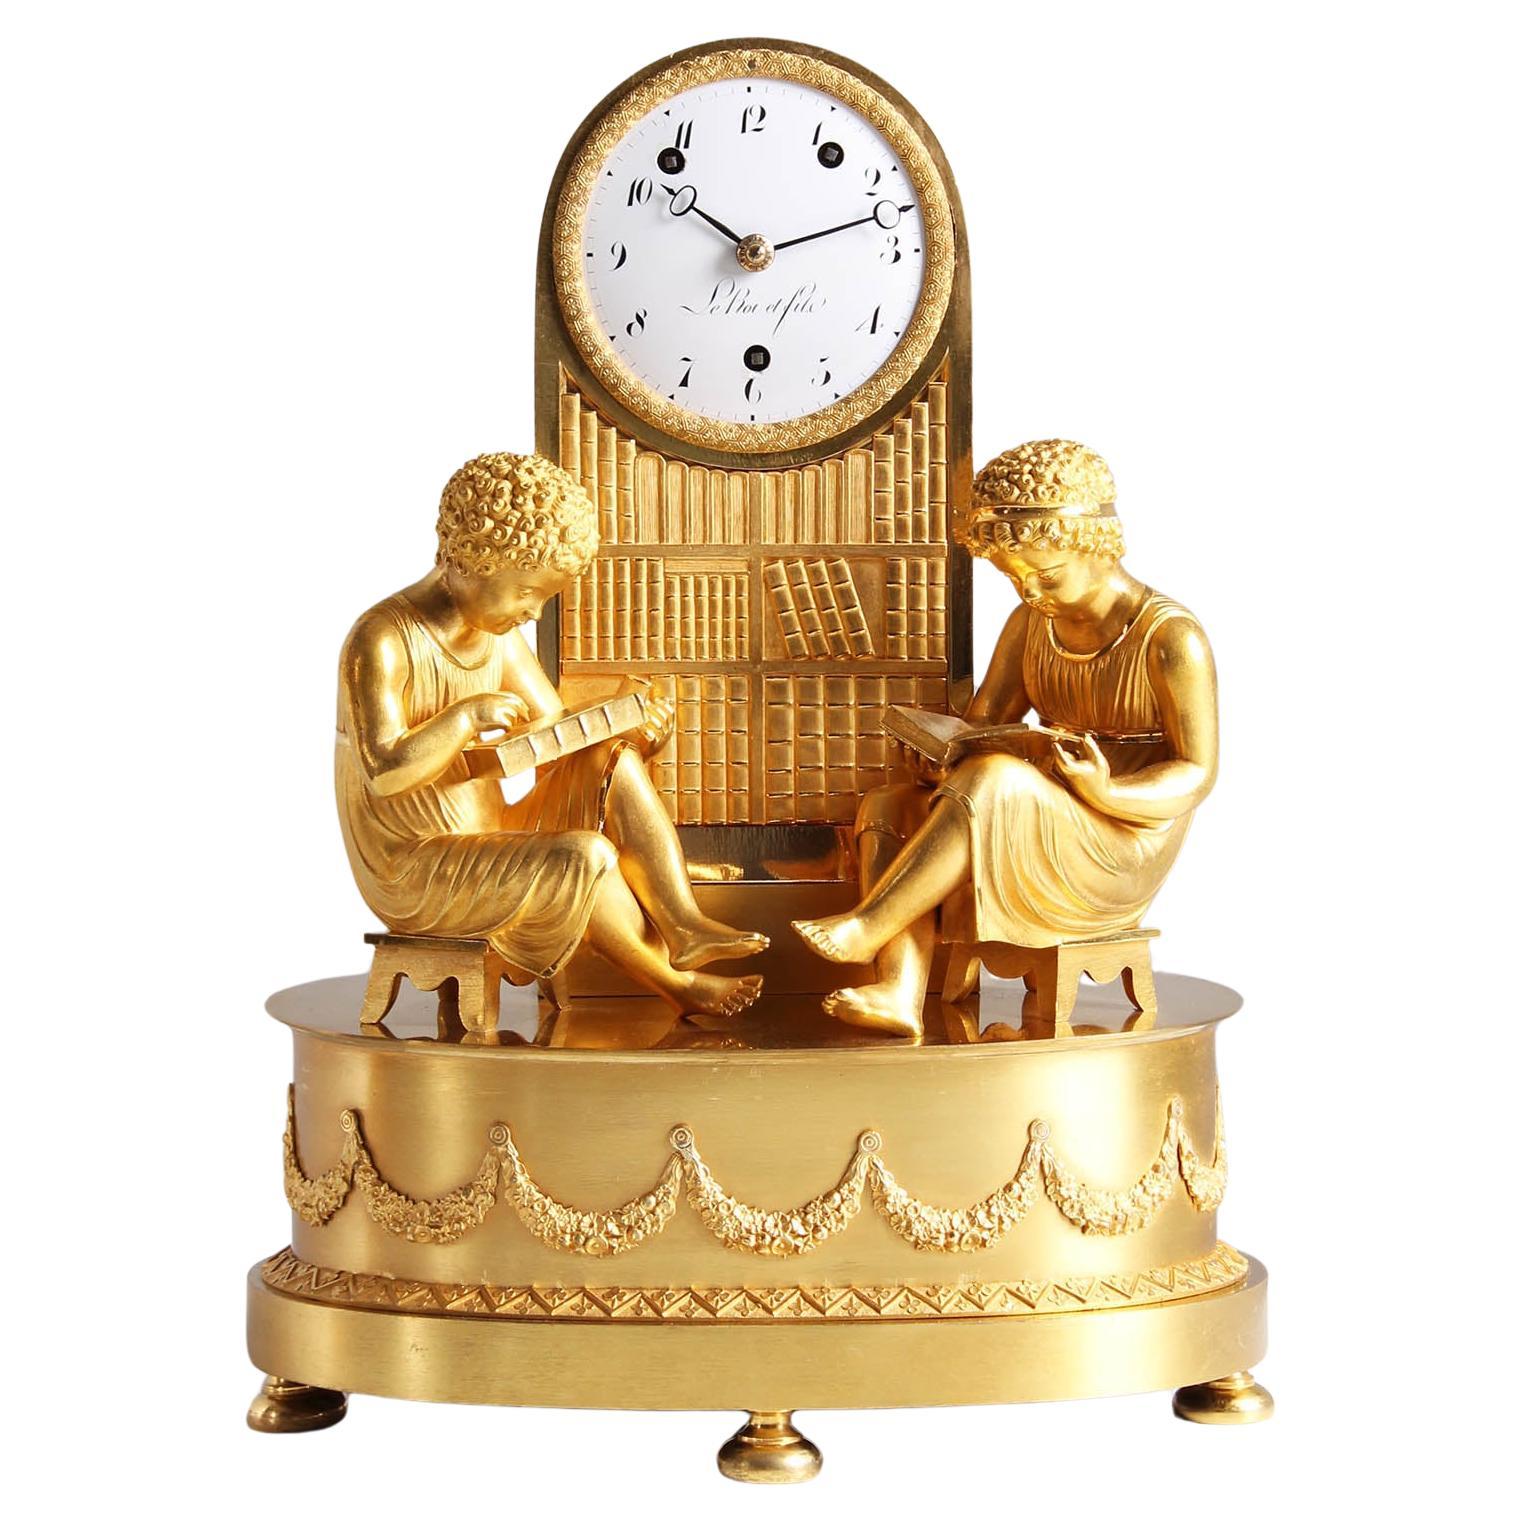 Empire Mantel Clock - La Bibliotheque, Ormolu, France, Paris, circa 1820